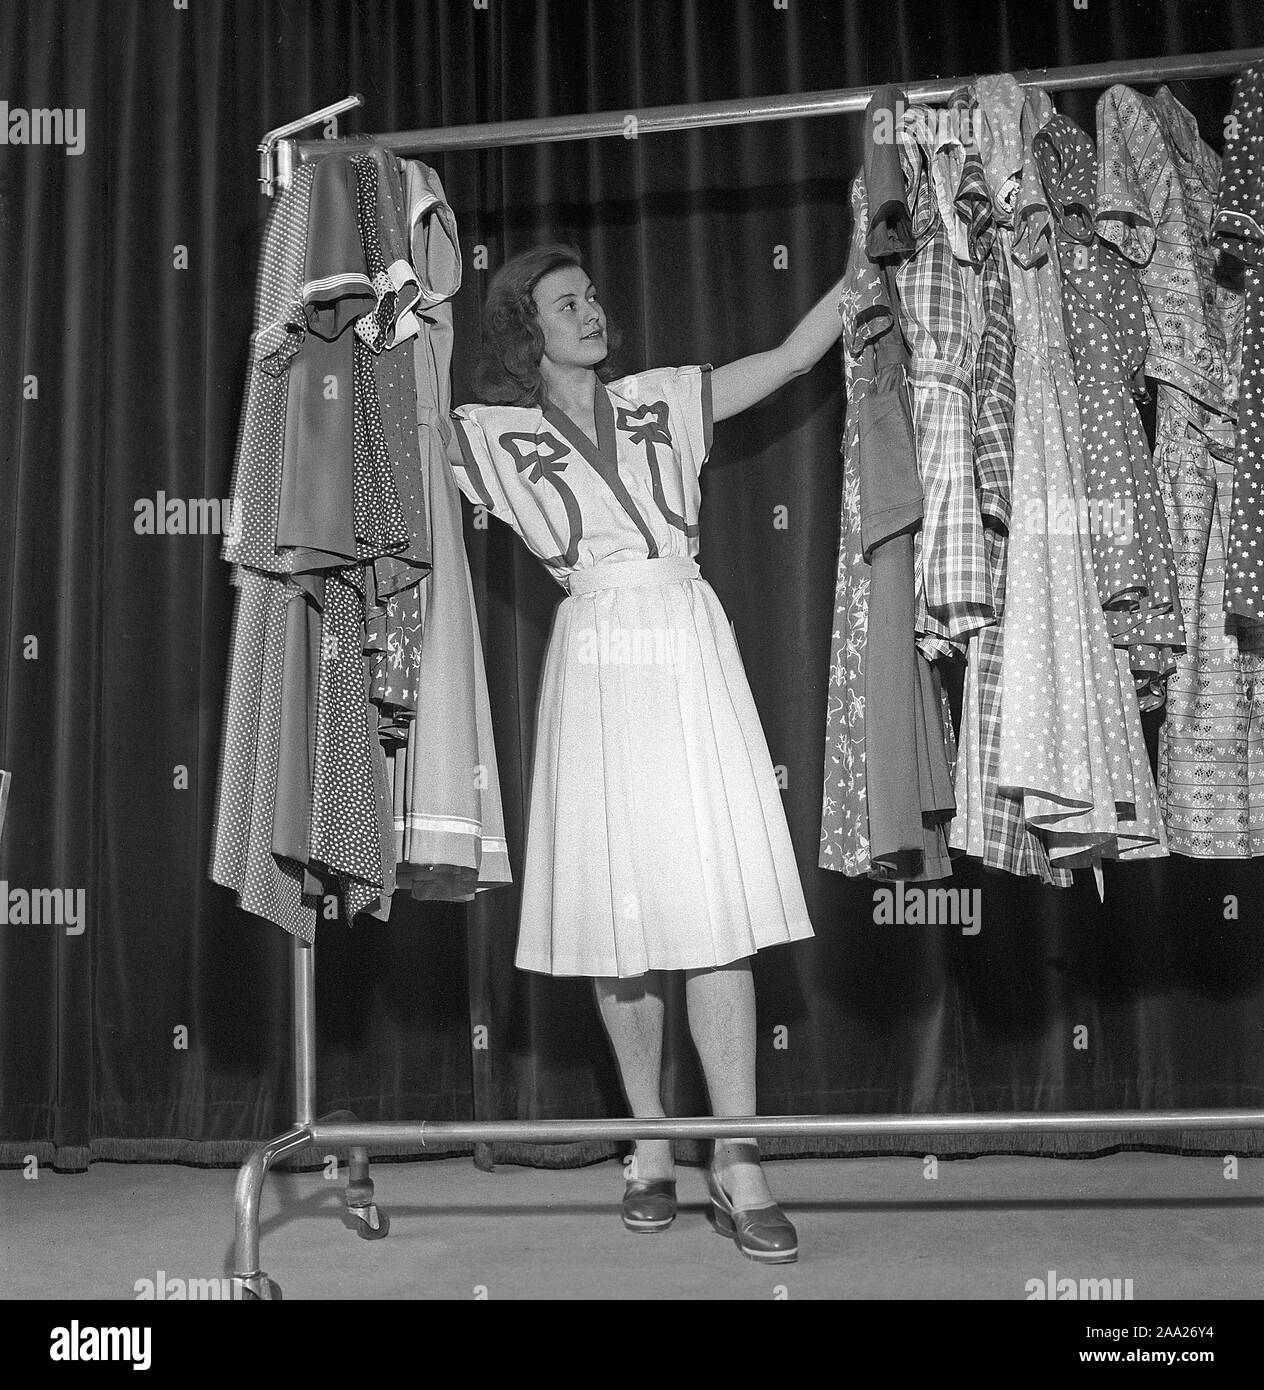 La mode féminine dans les années 40. Une jeune femme en costume typique des  années 40 est debout et à l'été à différentes robes. La Suède 1945  Kristoffersson Ref R129-1 Photo Stock - Alamy